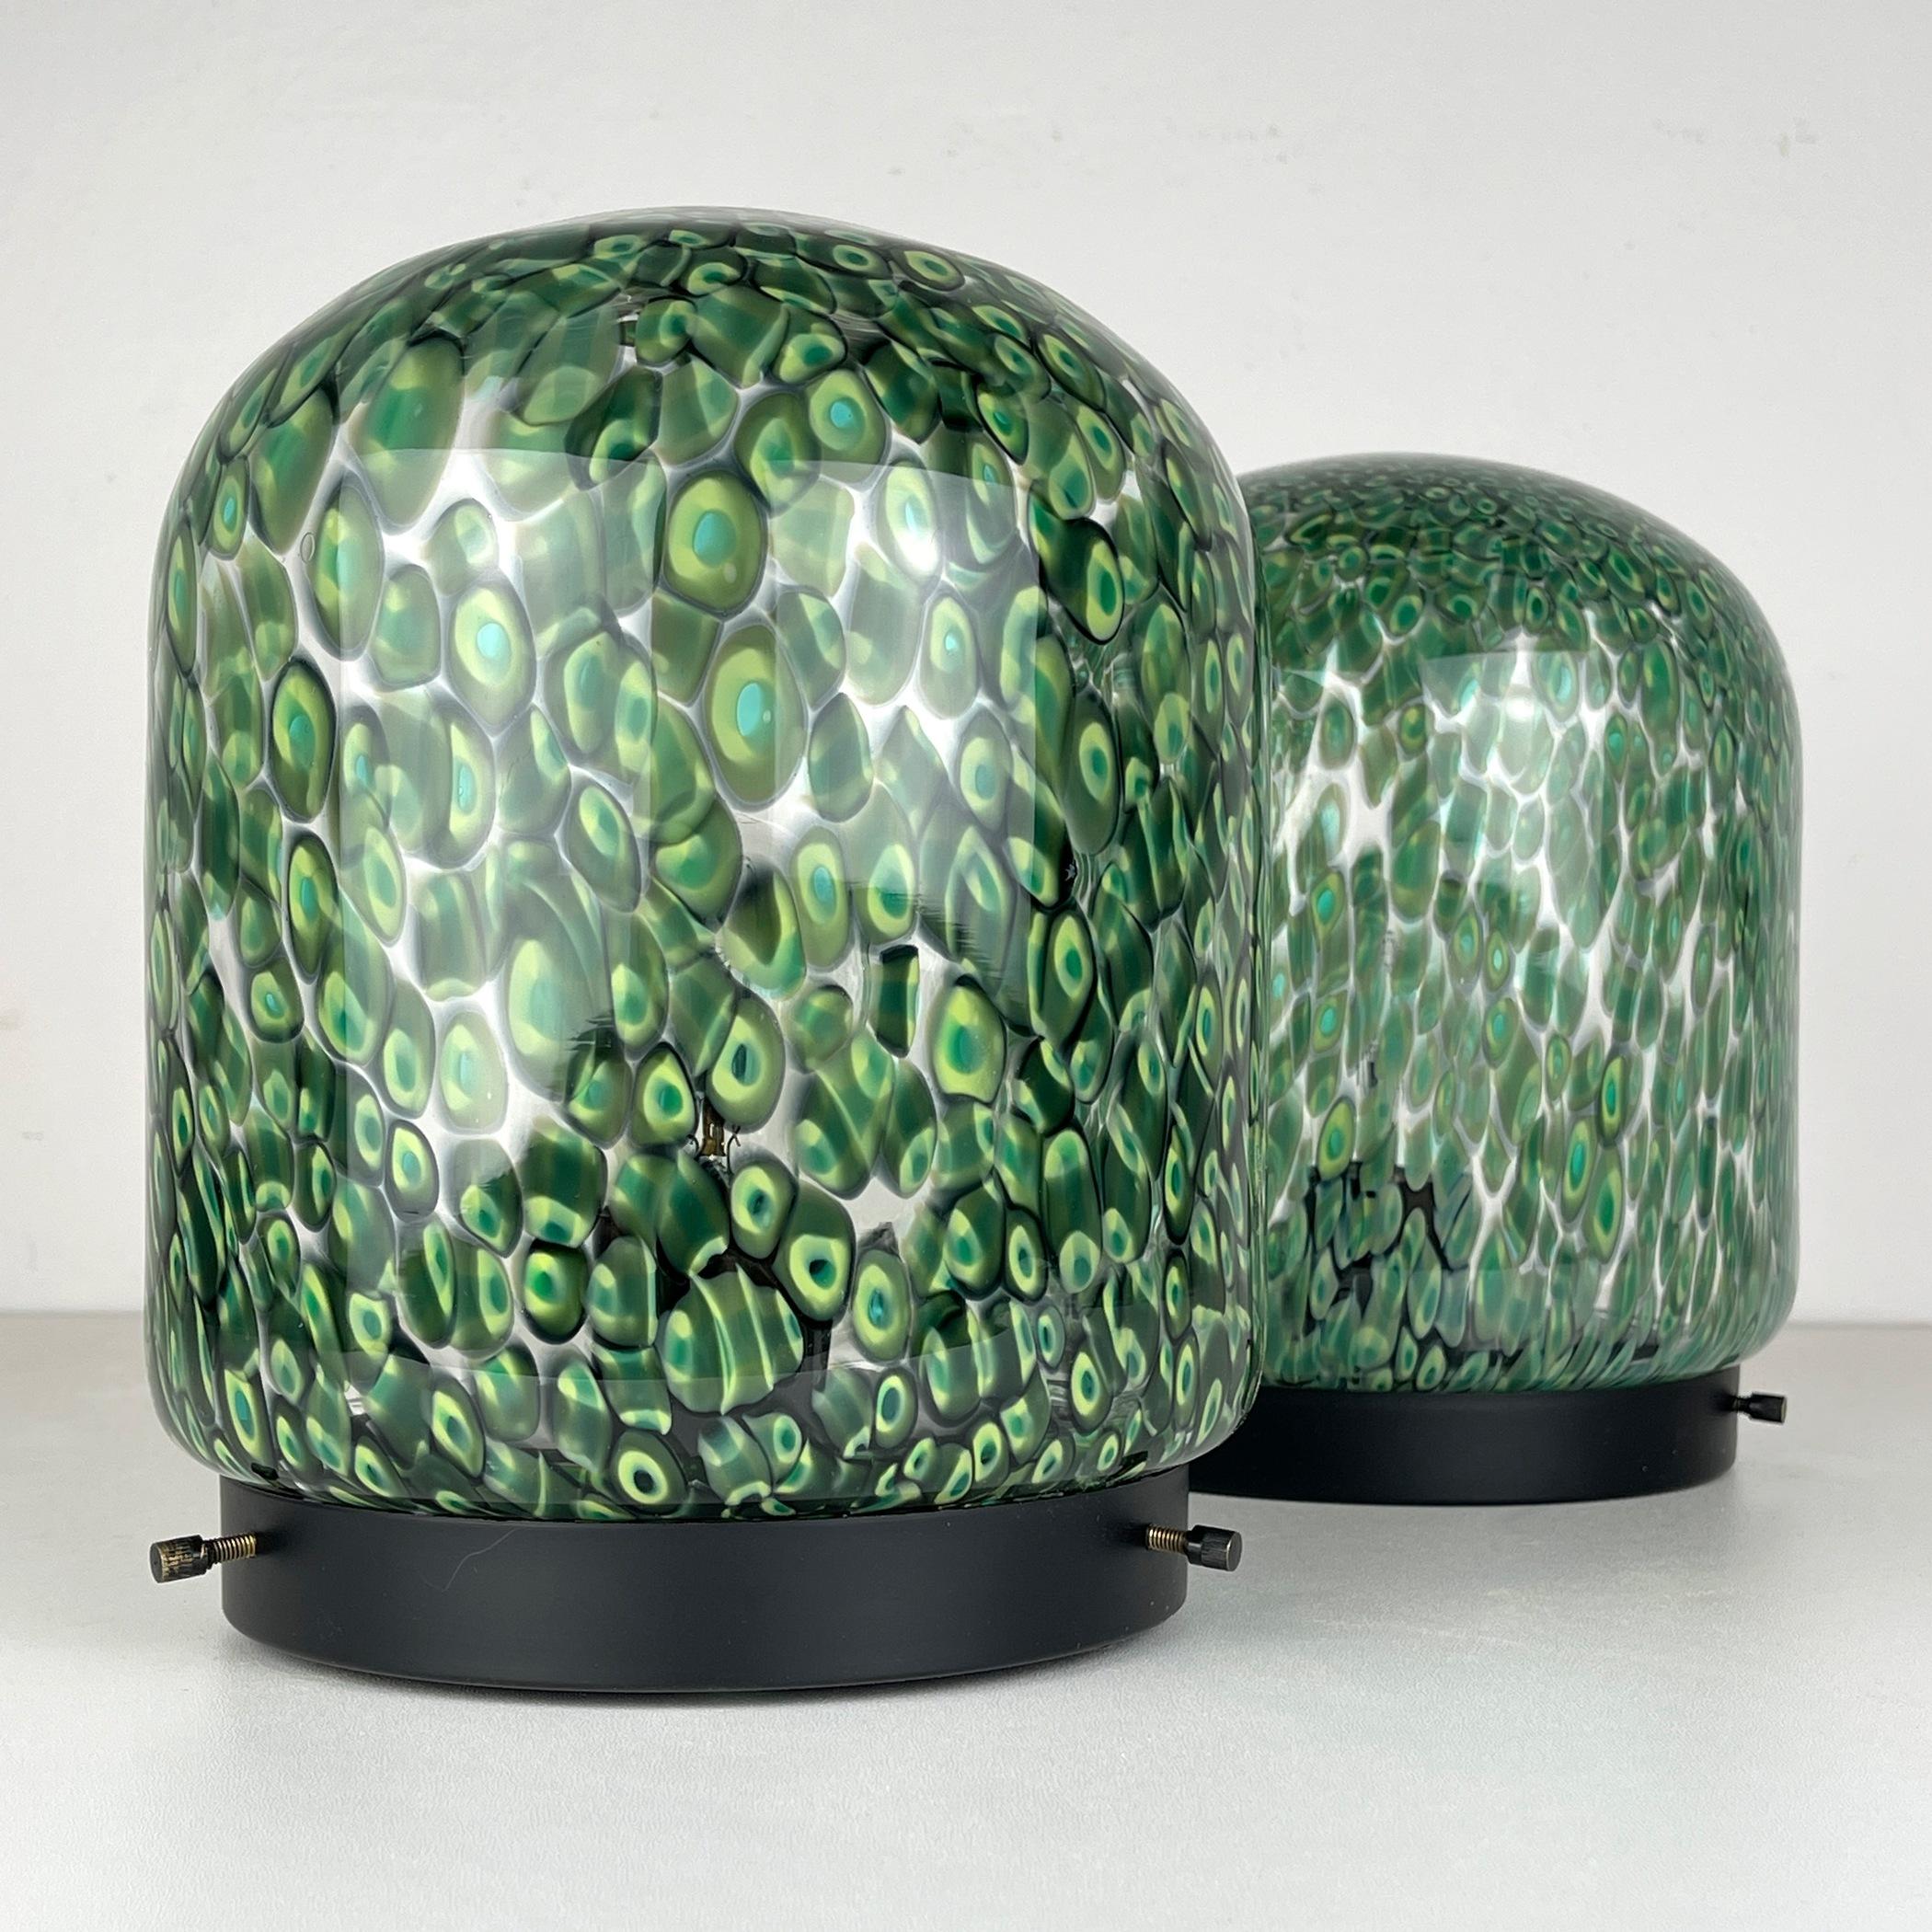 Beleben Sie Ihren Raum mit diesem exquisiten Paar grüner Tischlampen, die in den 1970er Jahren von Gae Aulenti für Vistosi in Italien entworfen wurden. Diese stilvollen Tischlampen sind eine echte Mischung aus Handwerkskunst und Design. Die